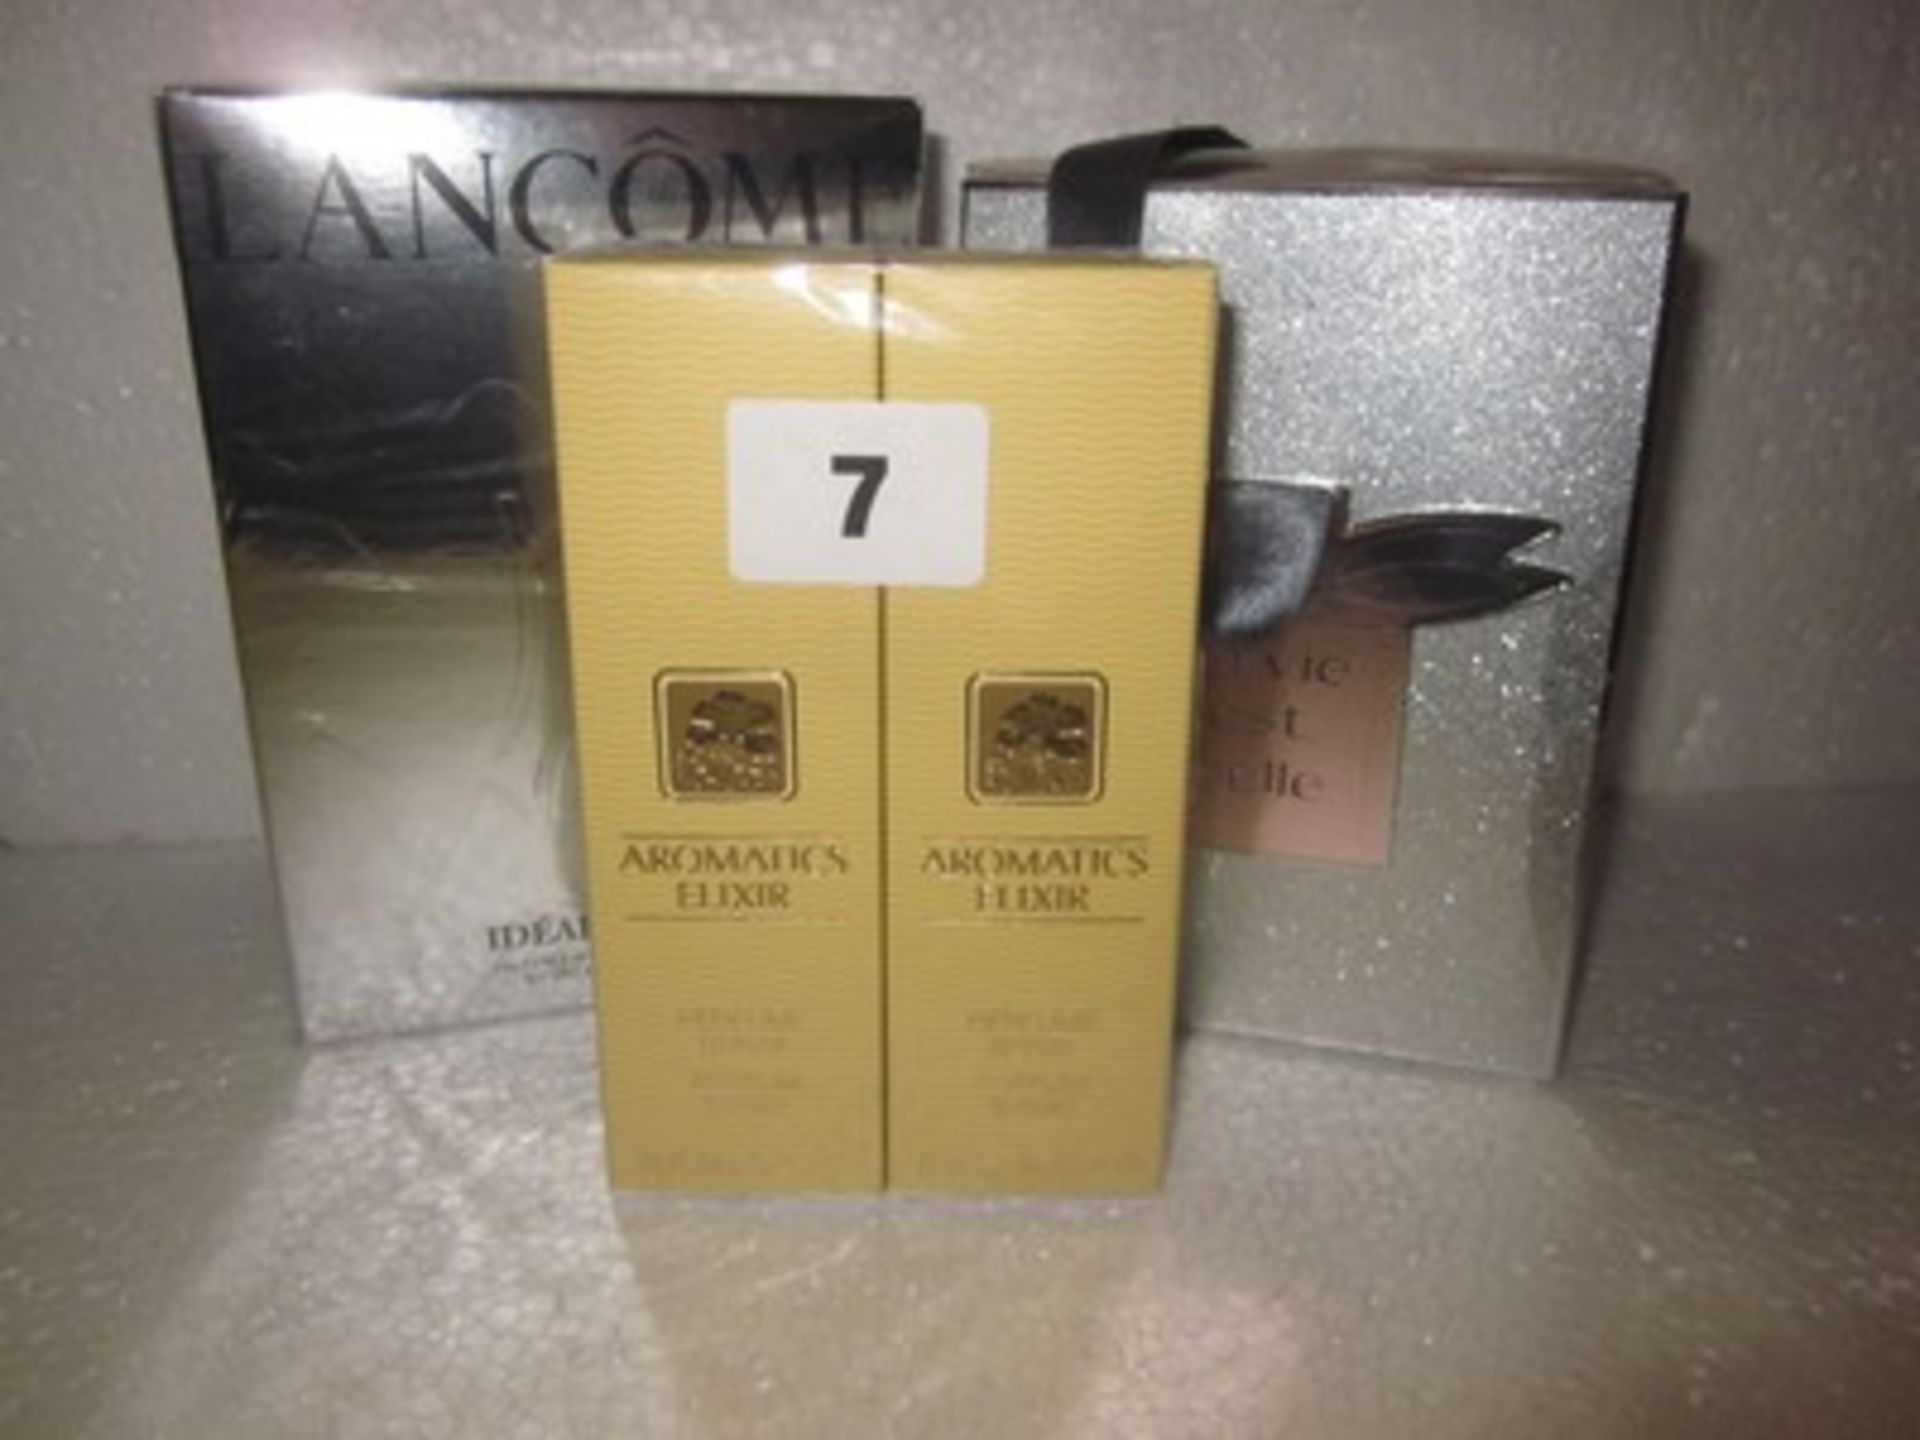 *A twin pack of Clinique Aromatics Elixir (25ml), Lancome La Vie est Belle eau de parfum (50ml)